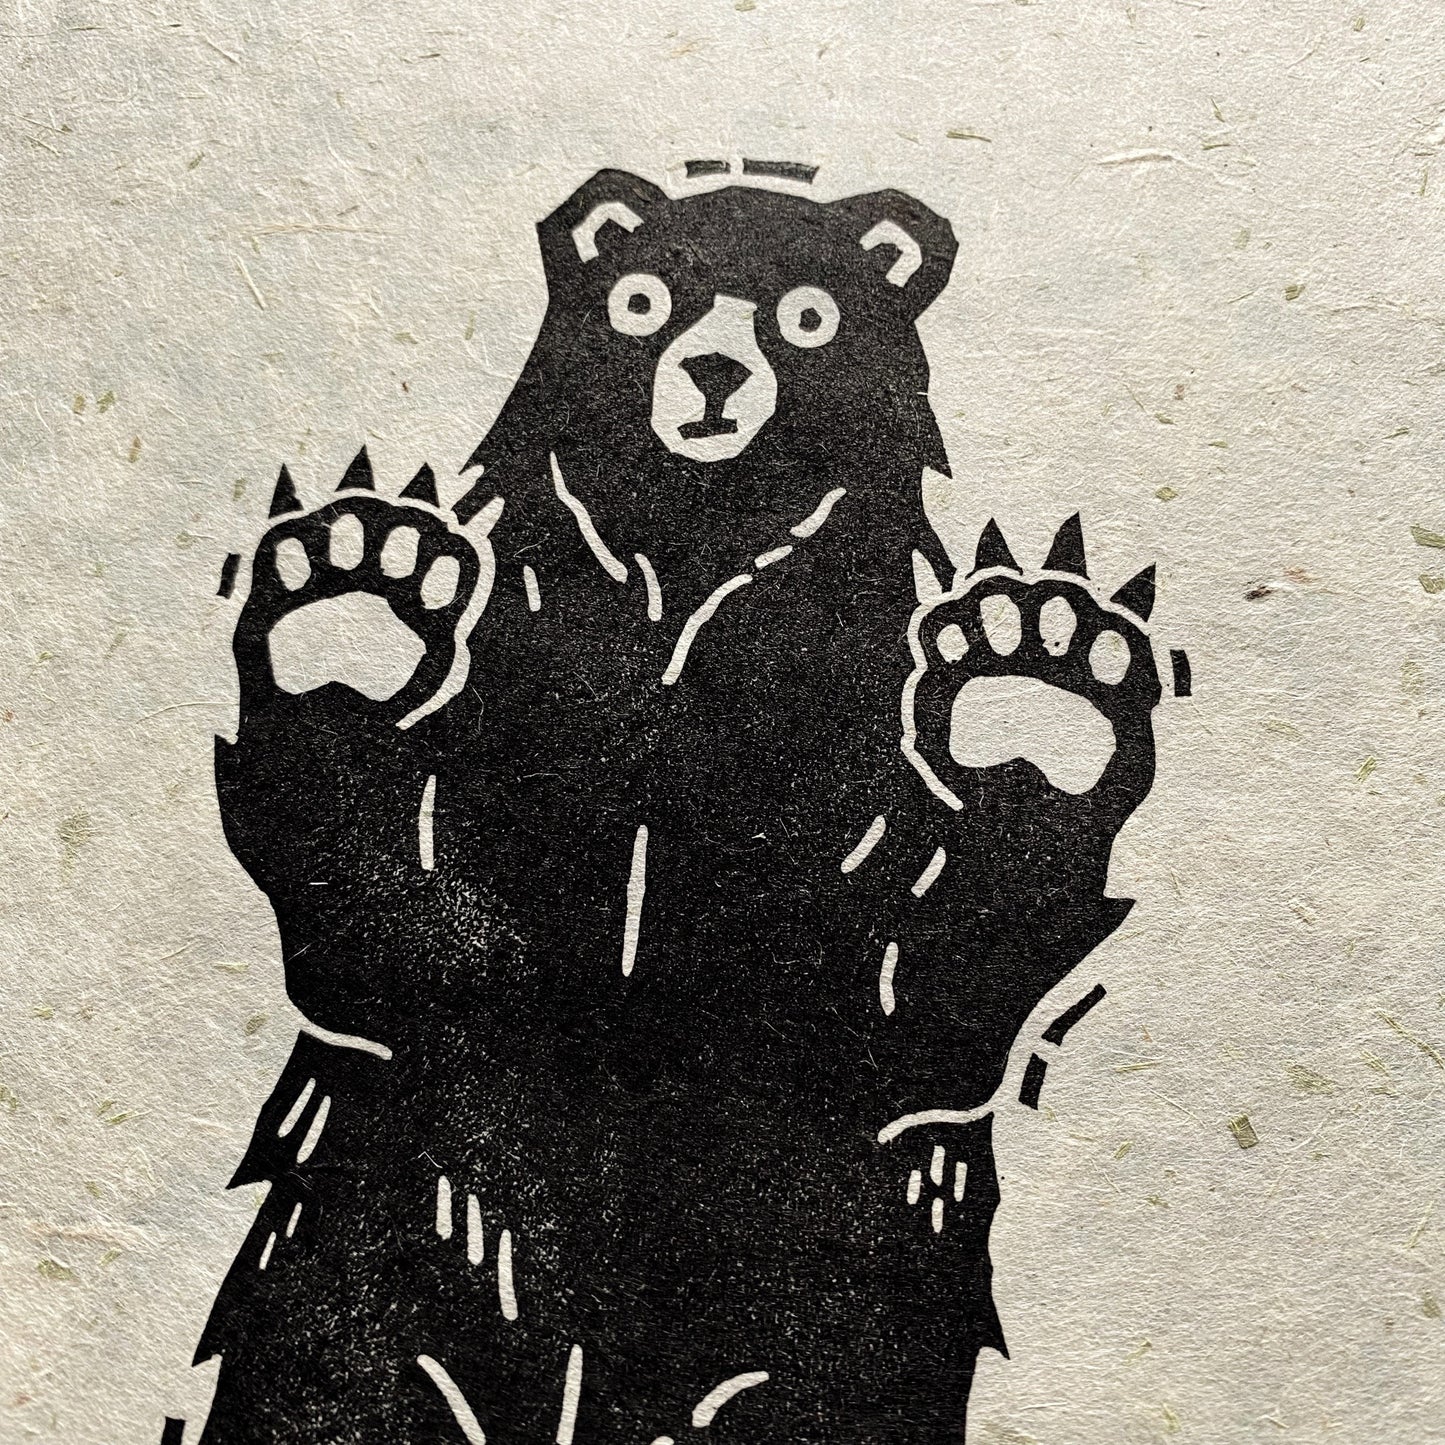 Bear Lino Cut Print